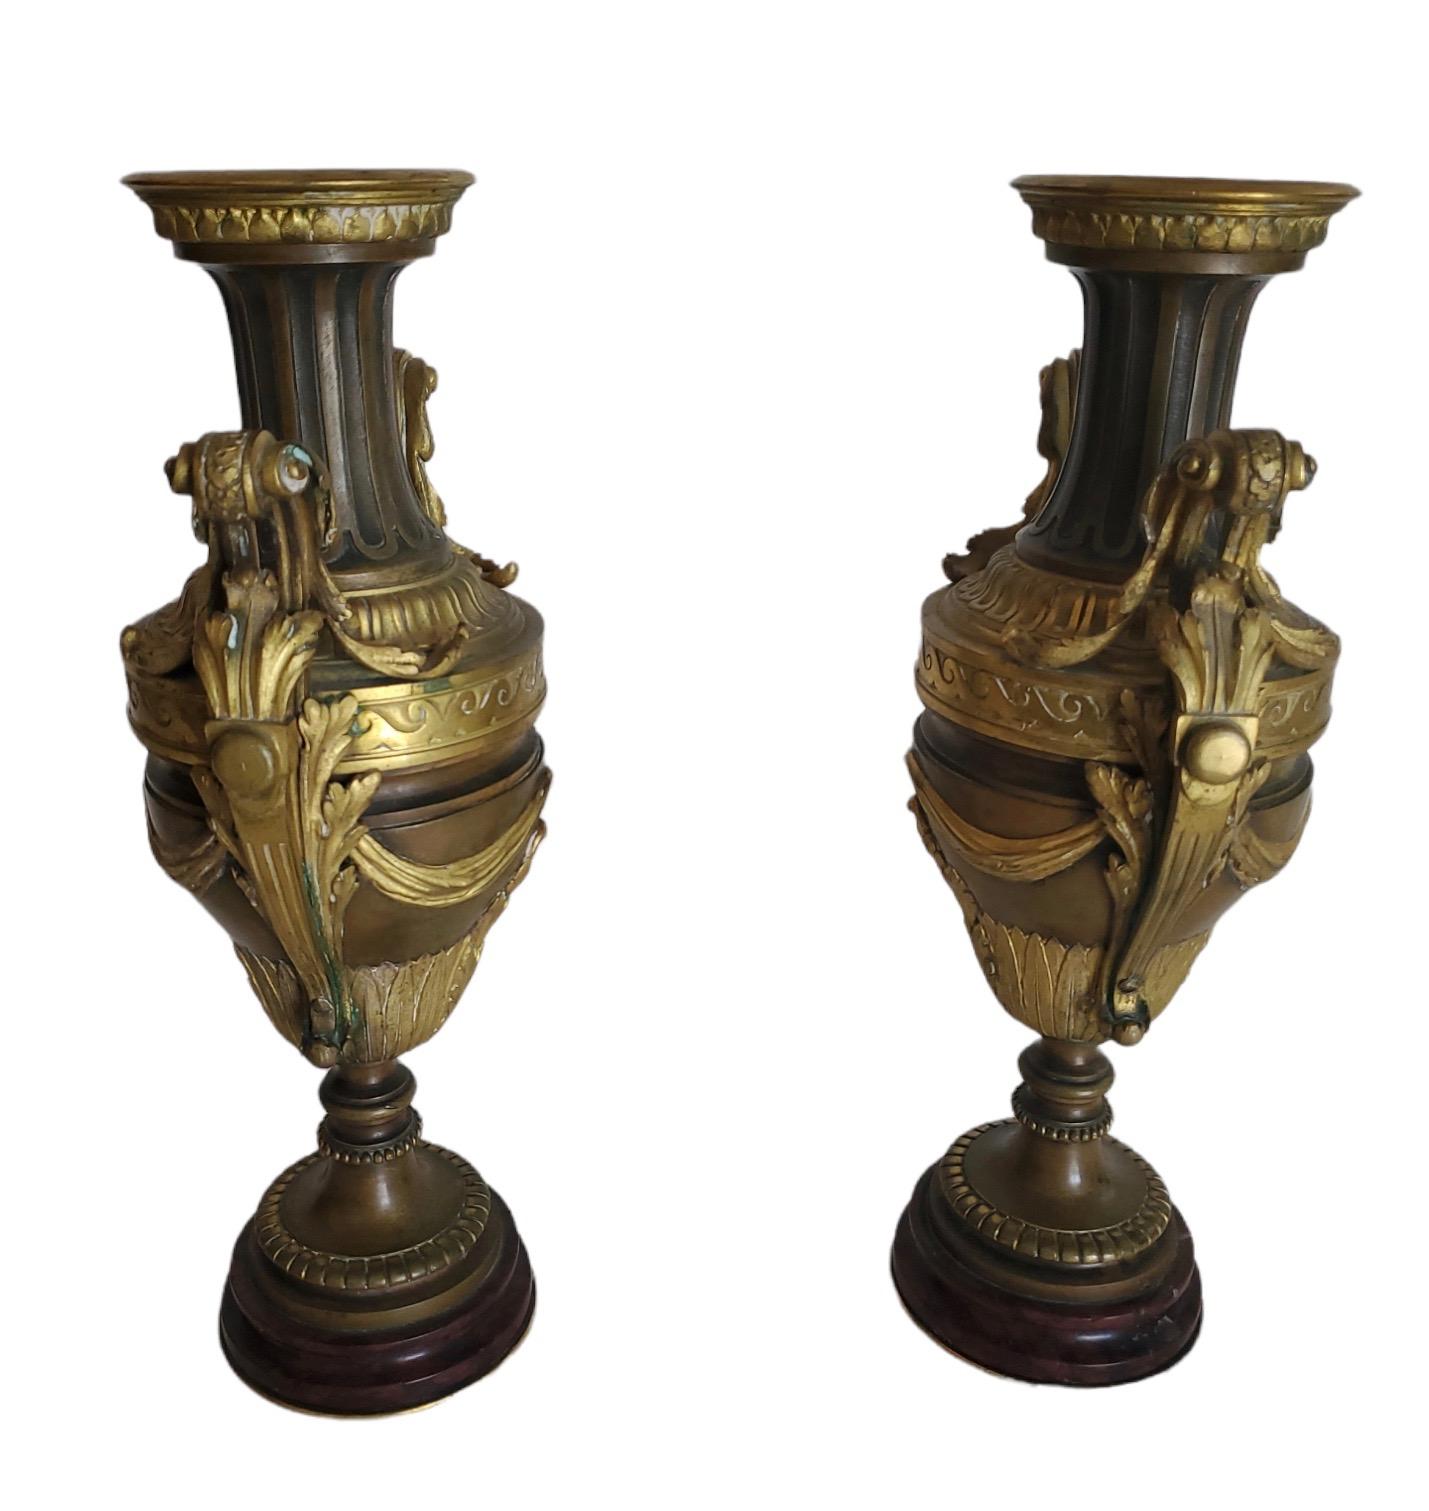 Paar gehandhabte, fein ziselierte und gegossene Bronze- und Dore-Bronze-Urnen/Garnituren.